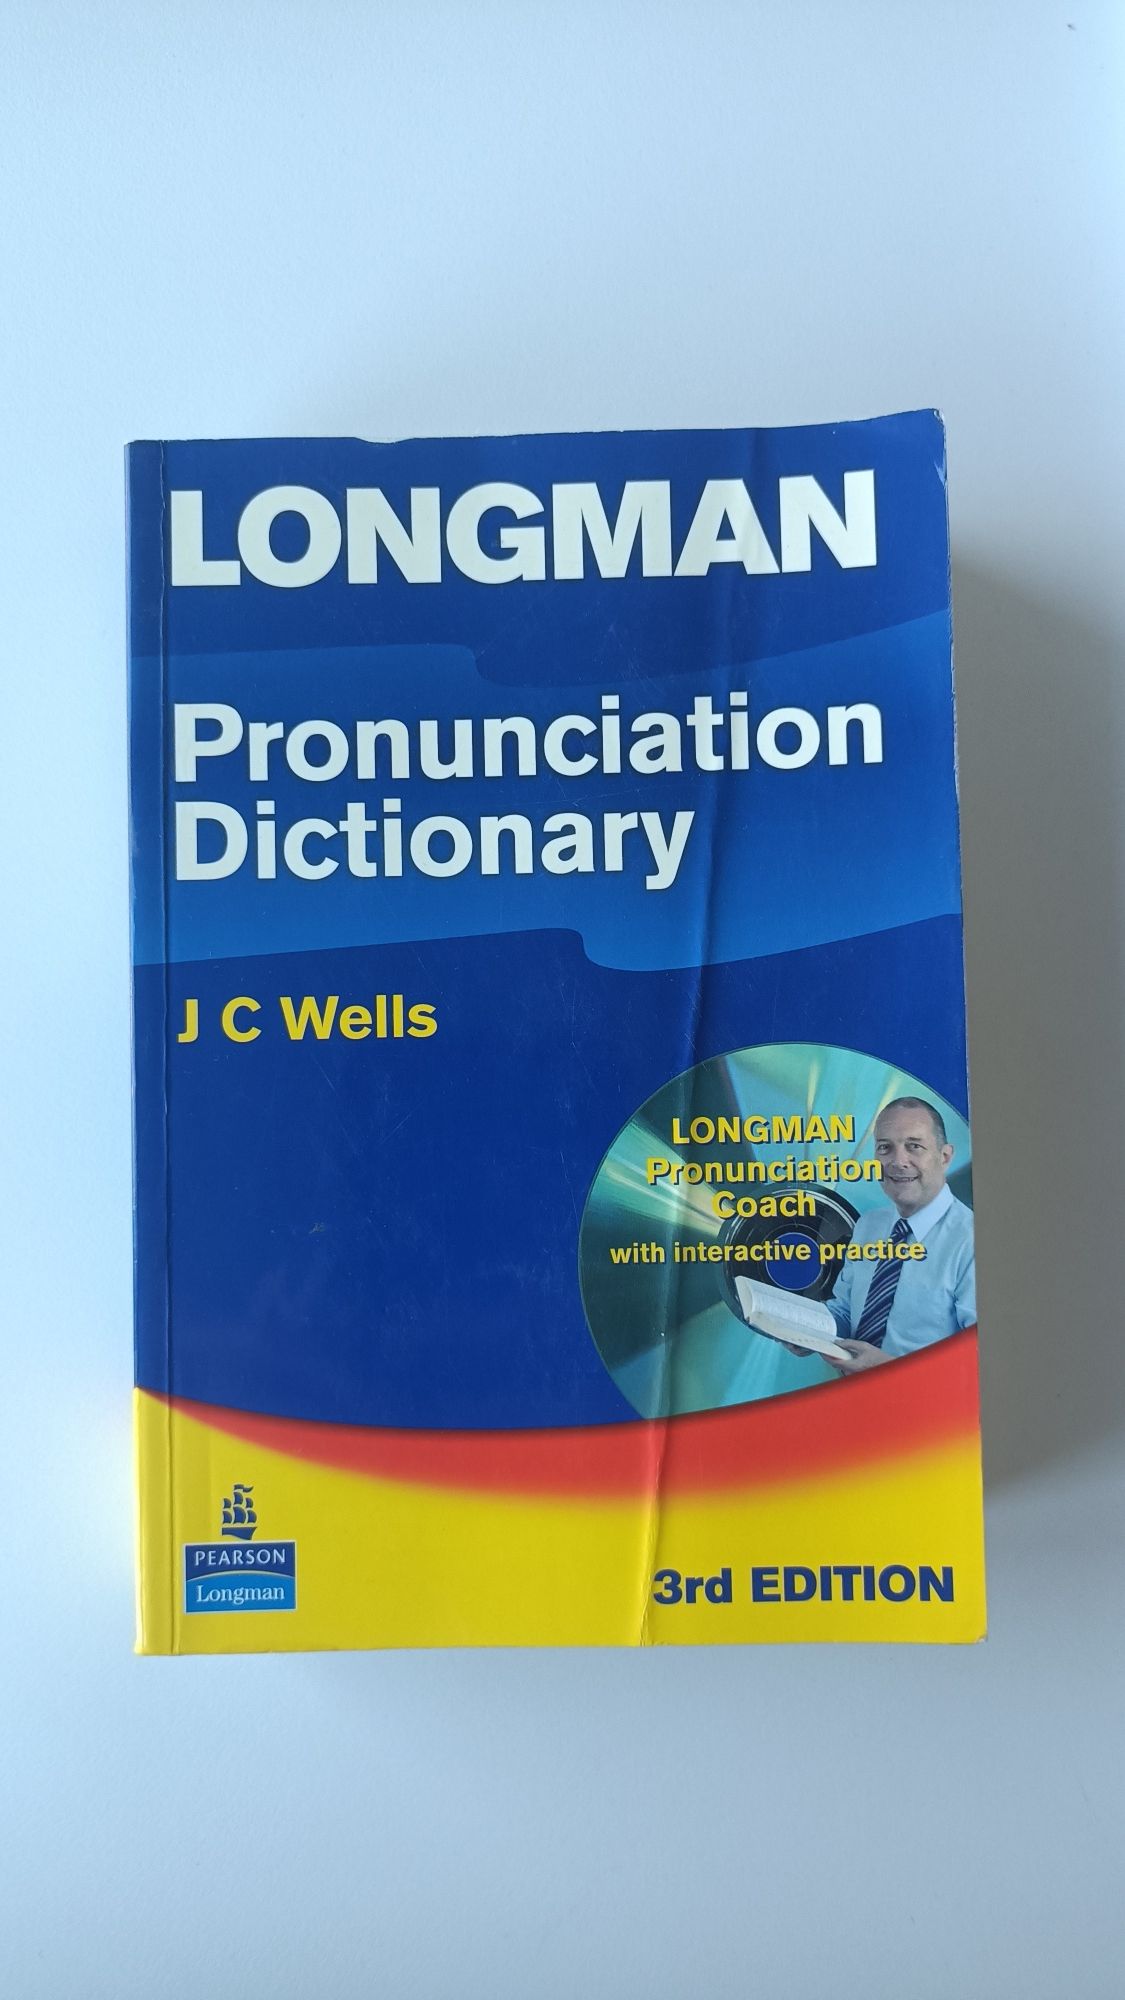 Longman - Pronunciation Dictionary - J. C. Wells